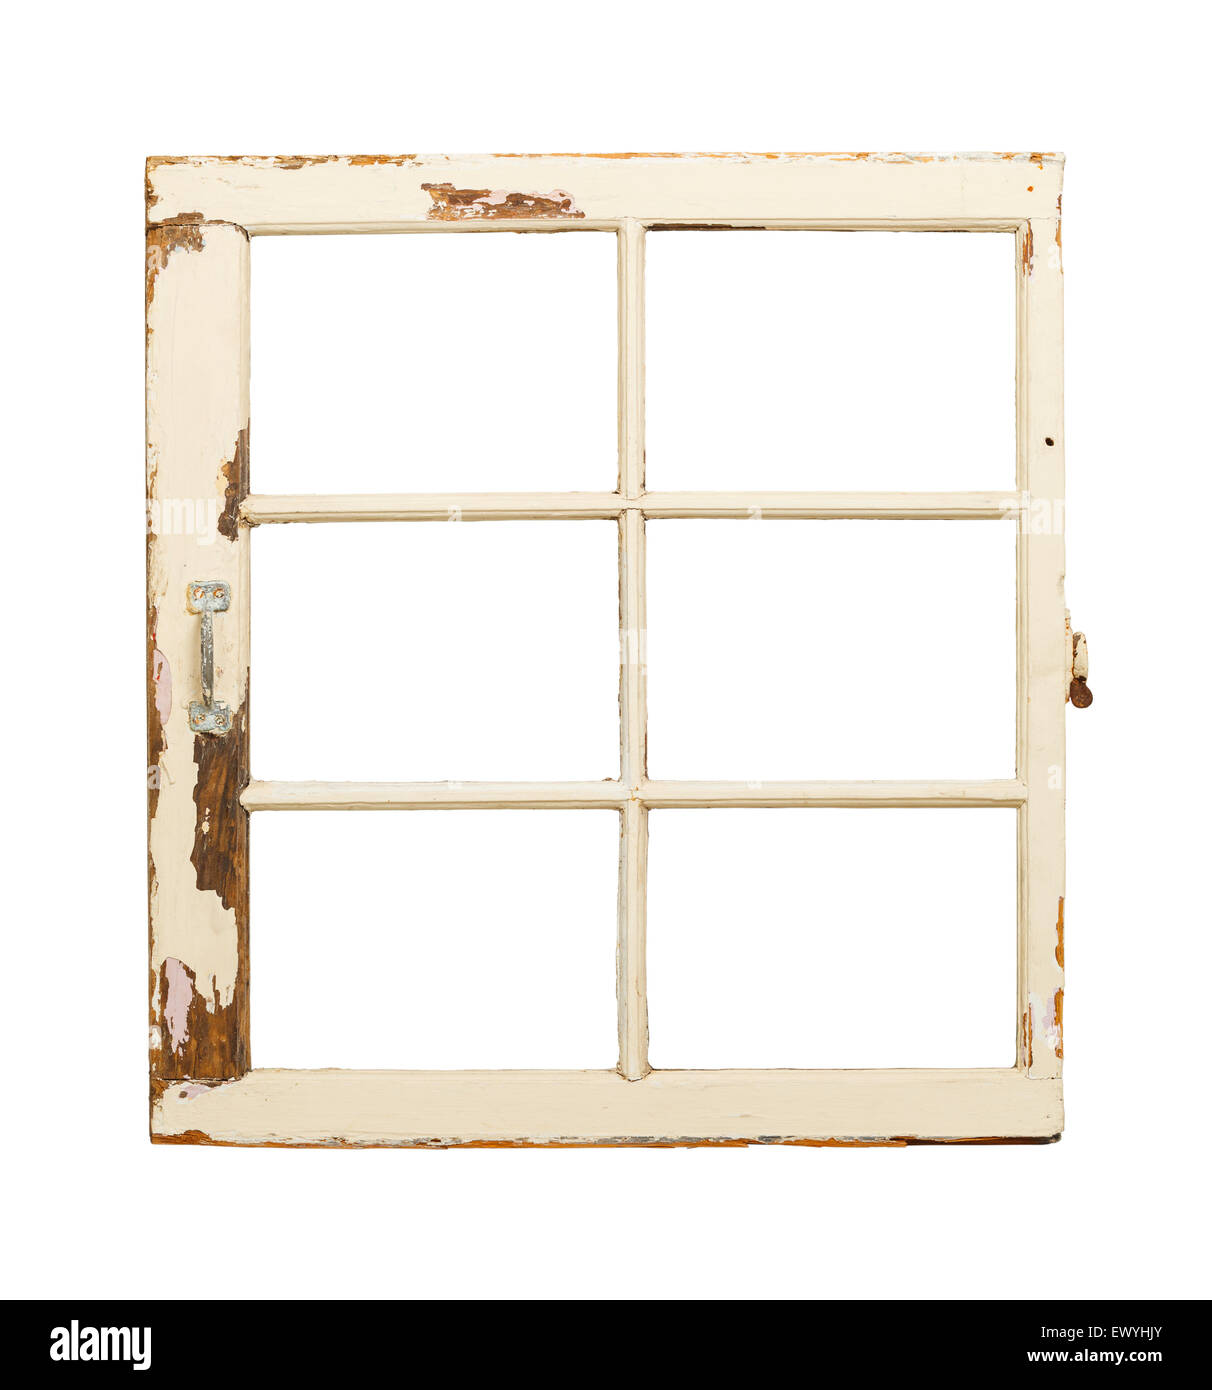 Vieille Fenêtre rustique avec poignée isolé sur fond blanc. Banque D'Images